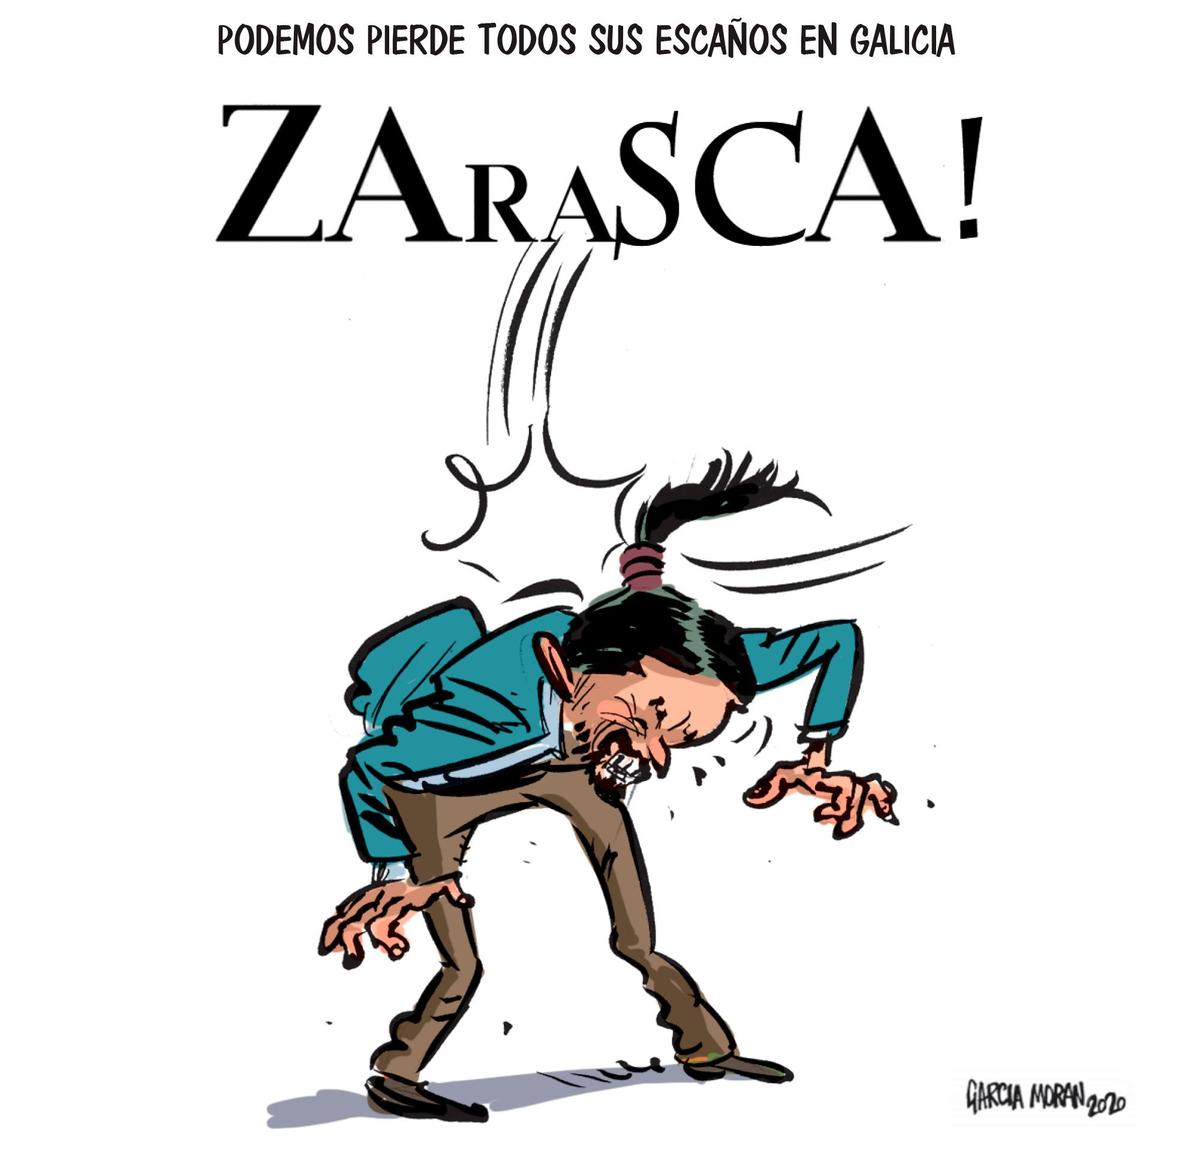 El humor de García Morán 14 de julio de 2020